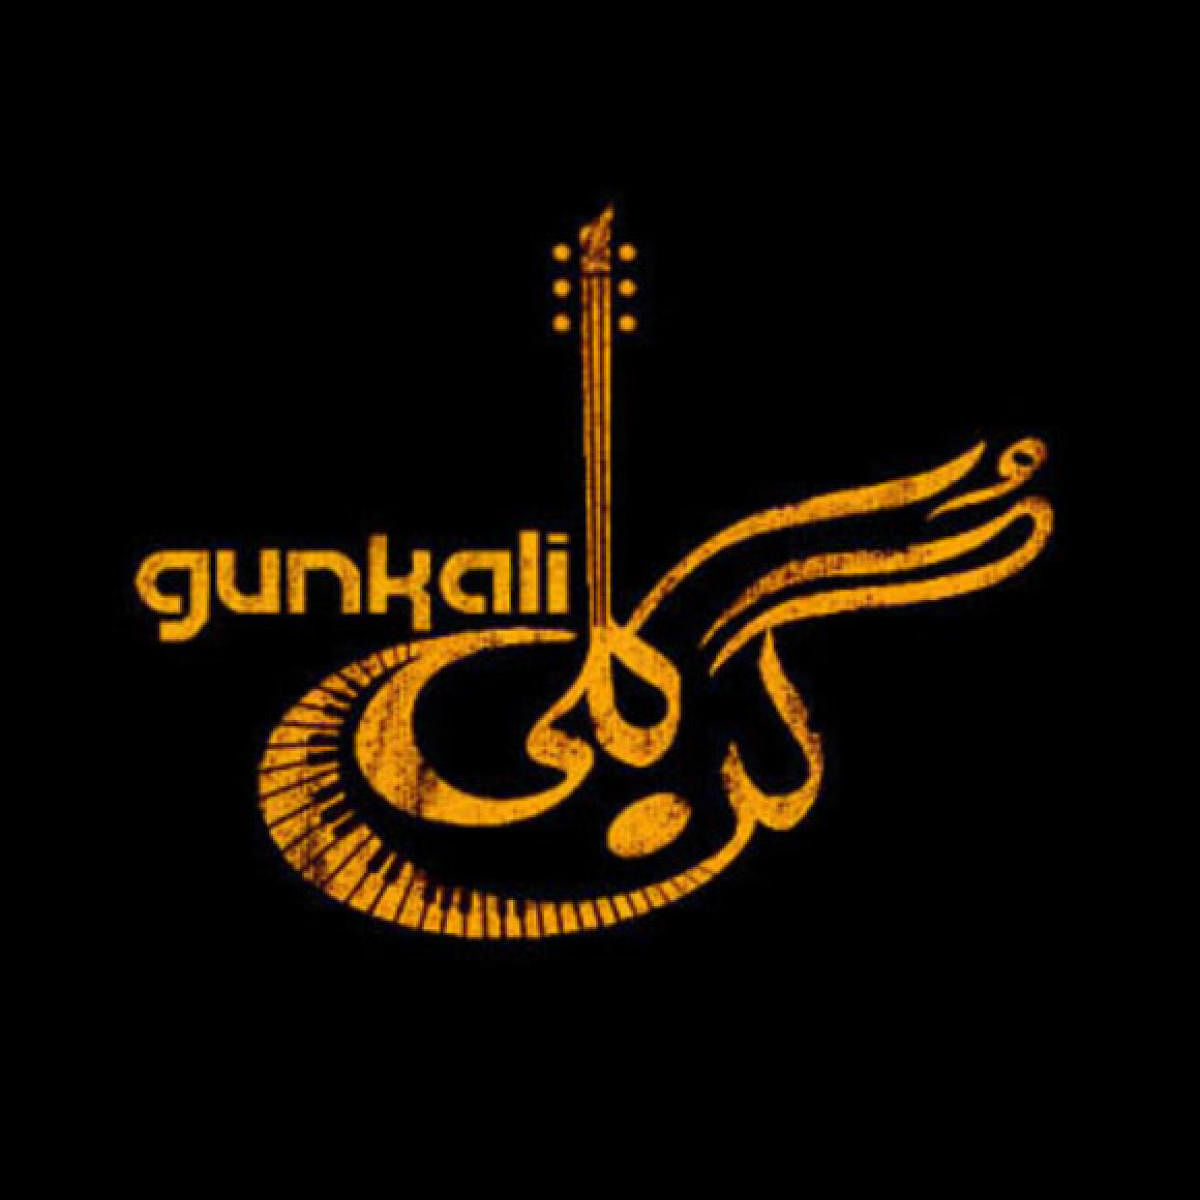 Gunkali, the album